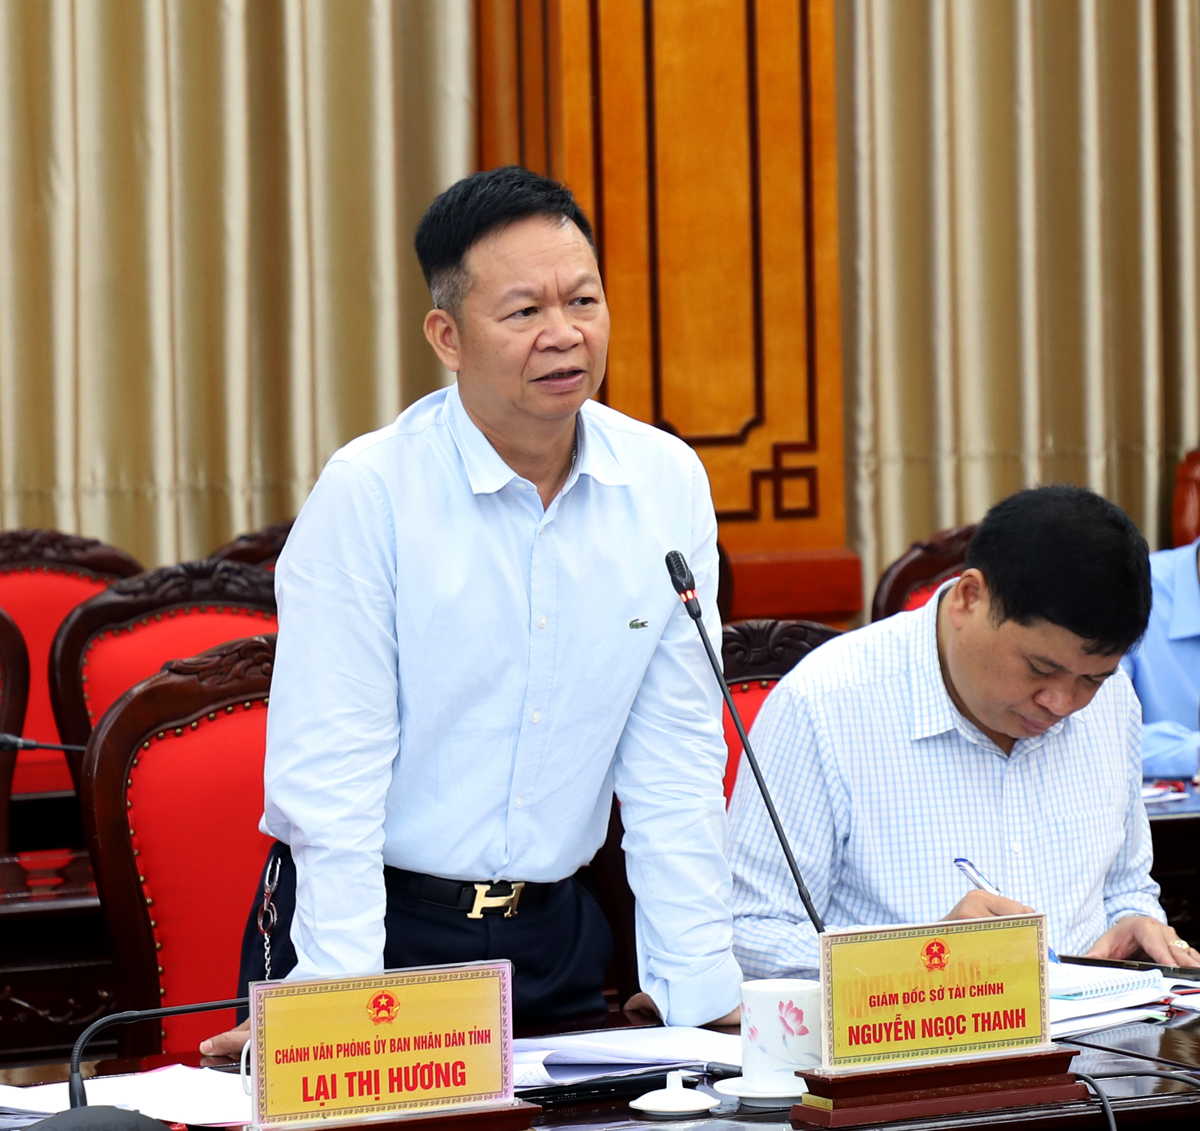 Giám đốc Sở Tài chính Nguyễn Ngọc Thanh đề nghị các cơ quan chủ quản 3 chương trình mục tiêu quốc gia rà soát các điều chỉnh để trình cấp có thẩm quyền chủ động bảo đảm nguồn vốn thực hiện.